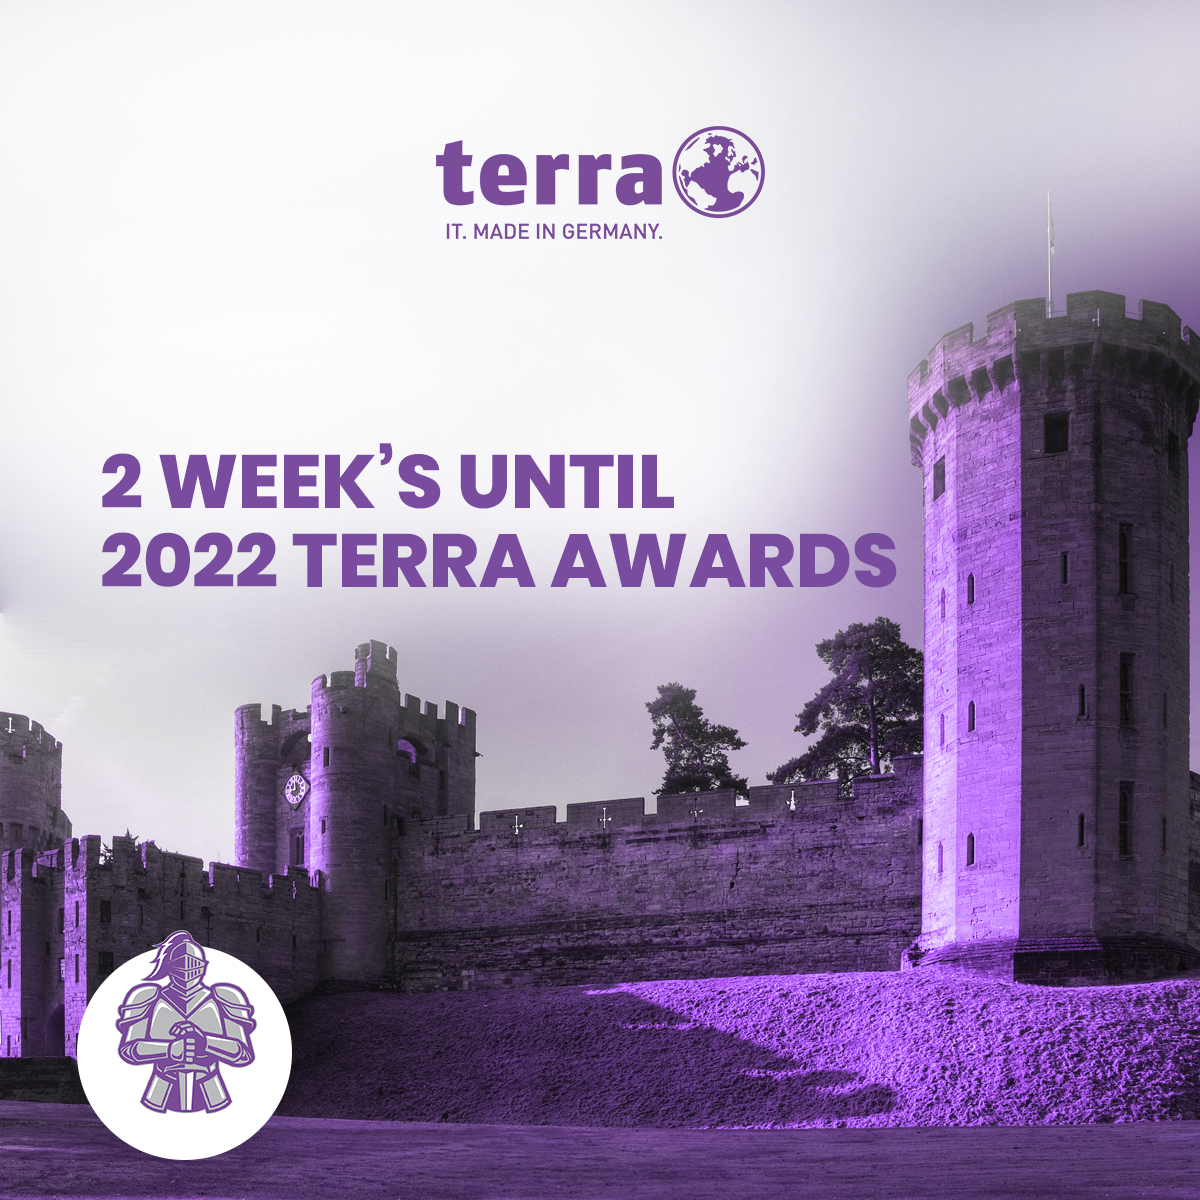 2 weeks until a 'K'night with TERRA 

#TeamTERRA #TERRAKnights #IuseTERRA